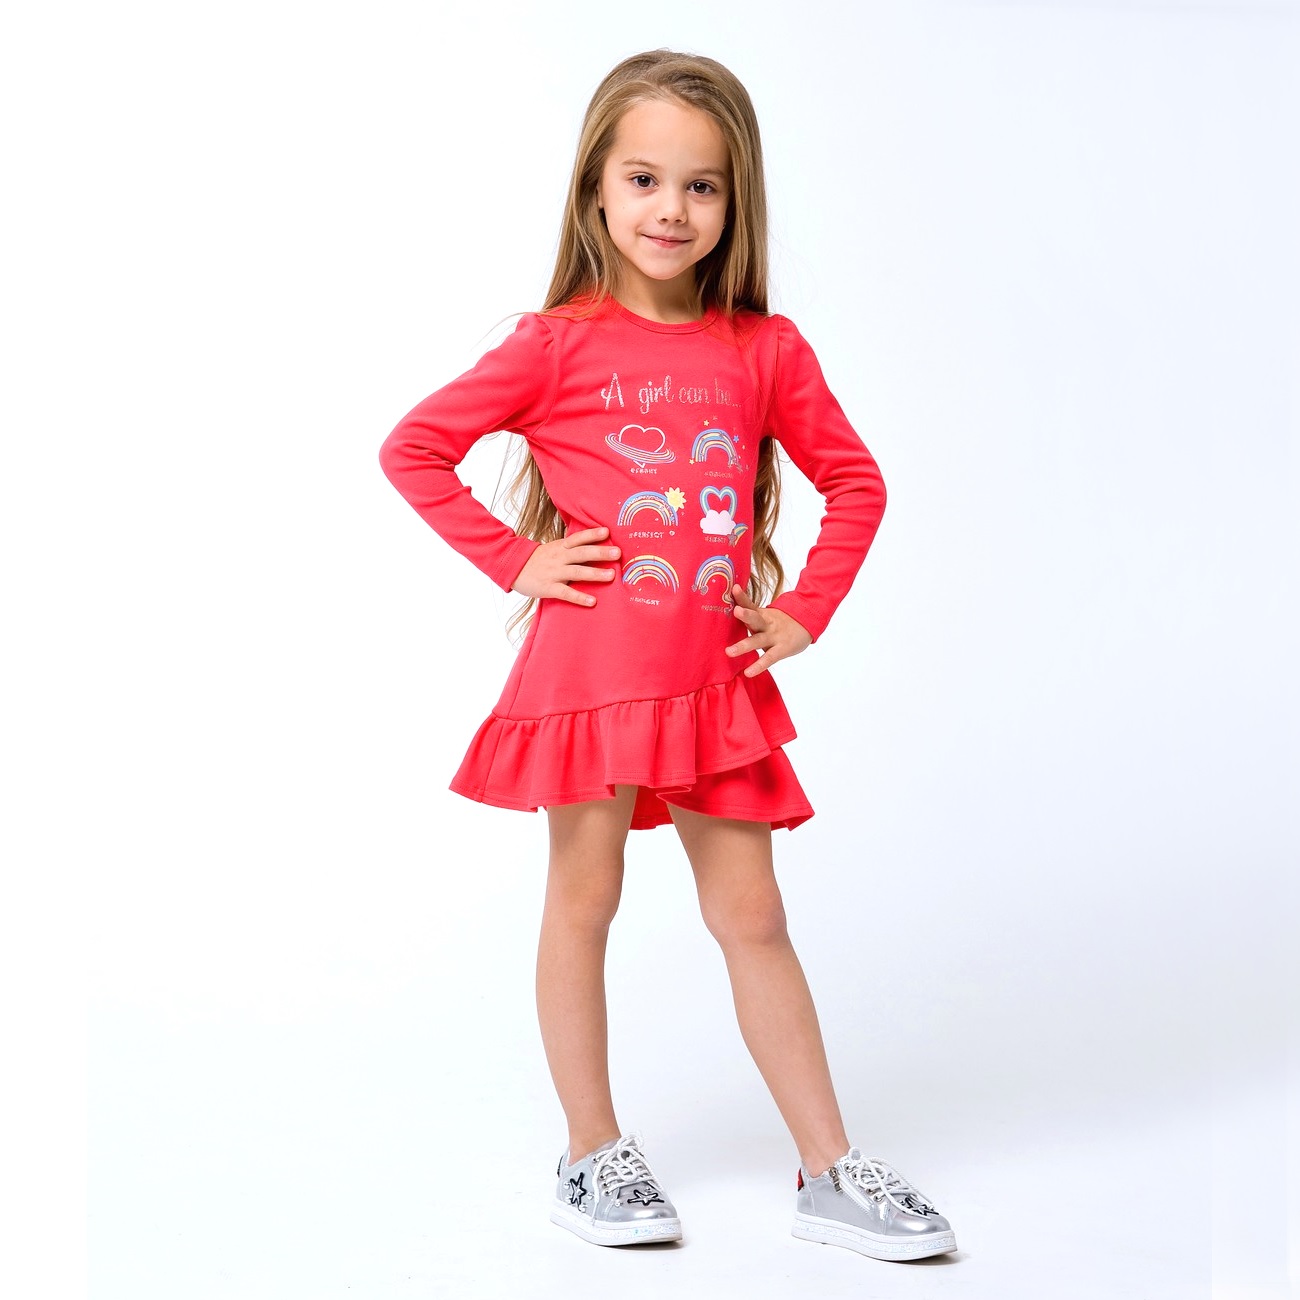 Дитяча сукня для дівчинки "Тільки для дівчаток", рожевий корал (120256), Smil (Смил)